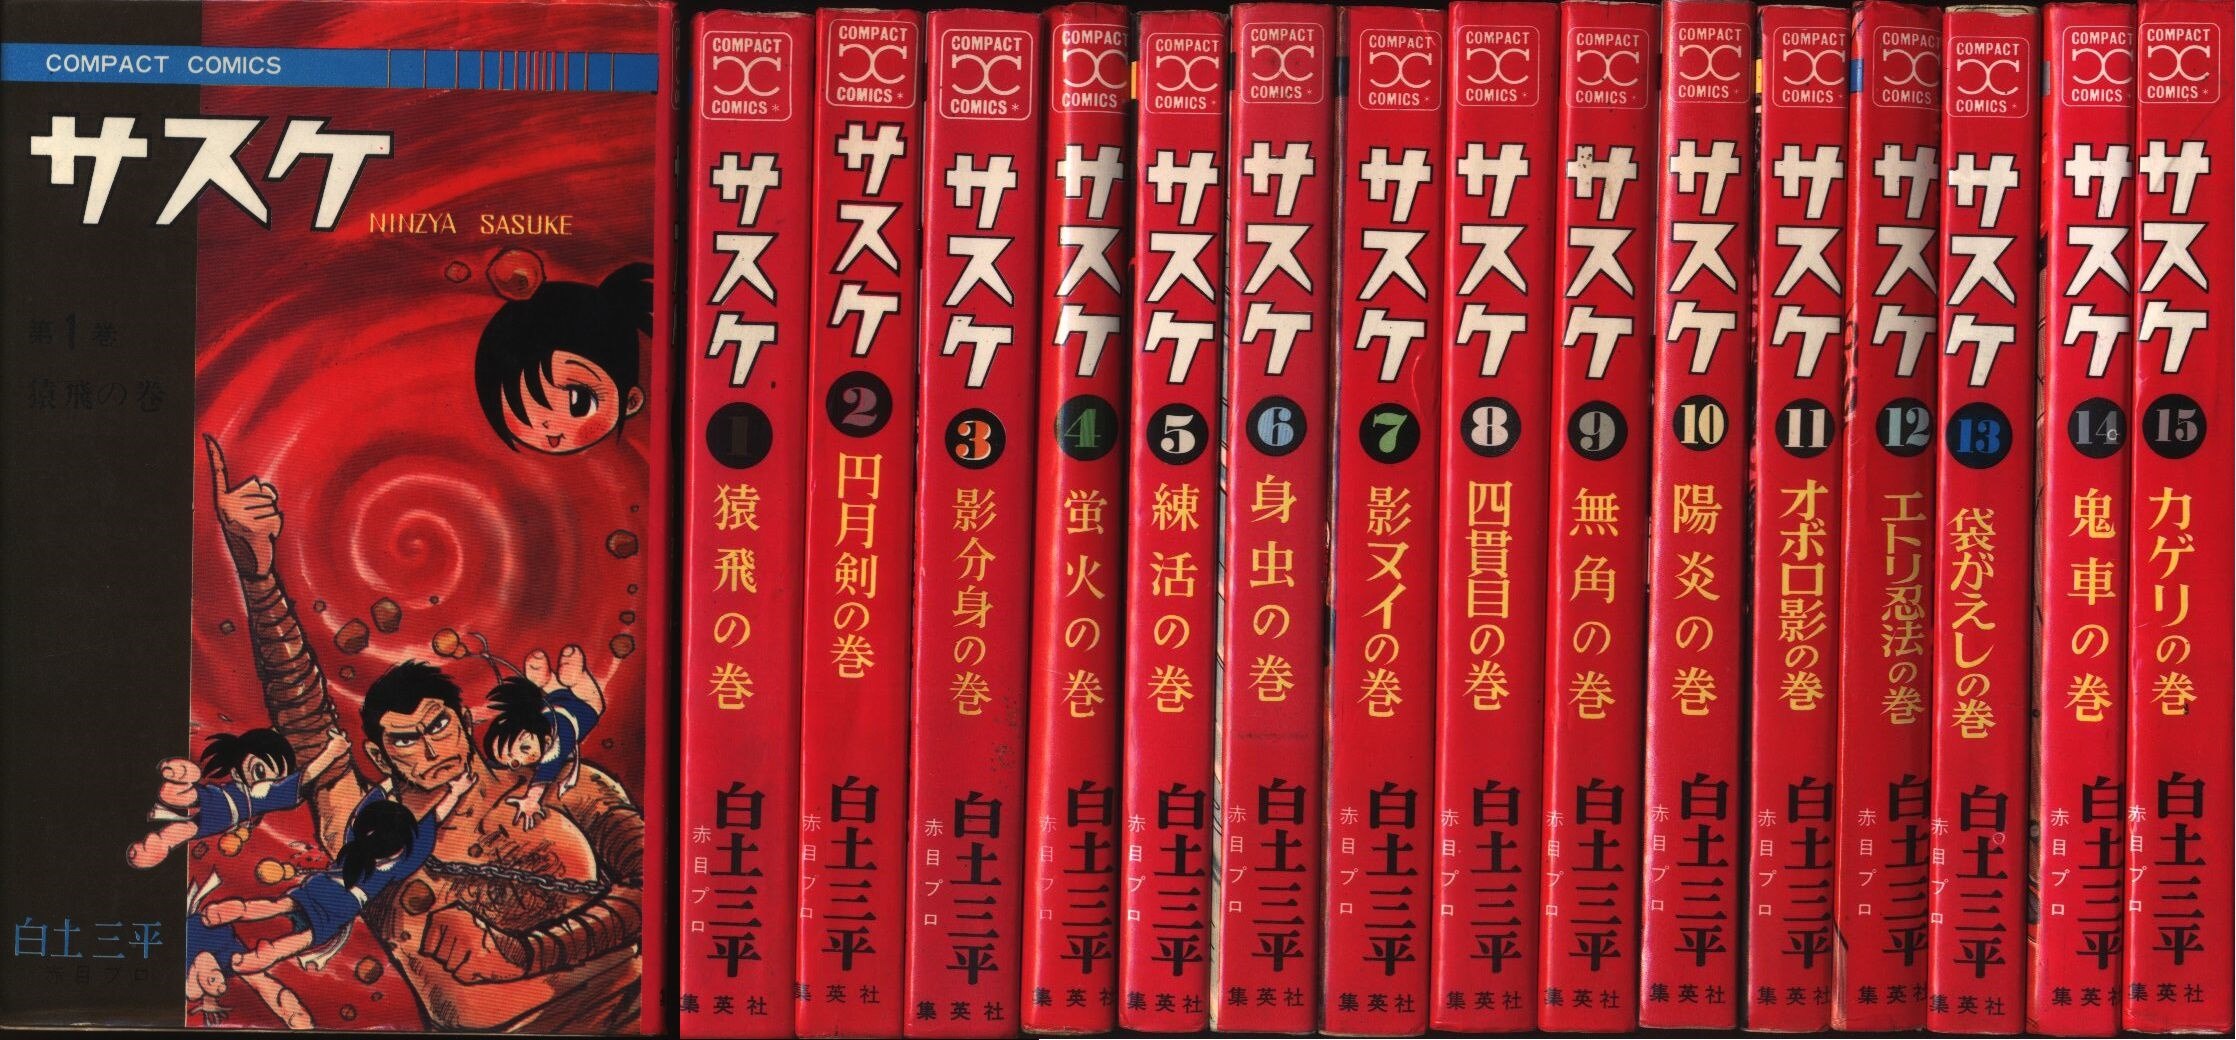 集英社 コンパクトコミック 白土三平 サスケ全15巻 再版セット まんだらけ Mandarake